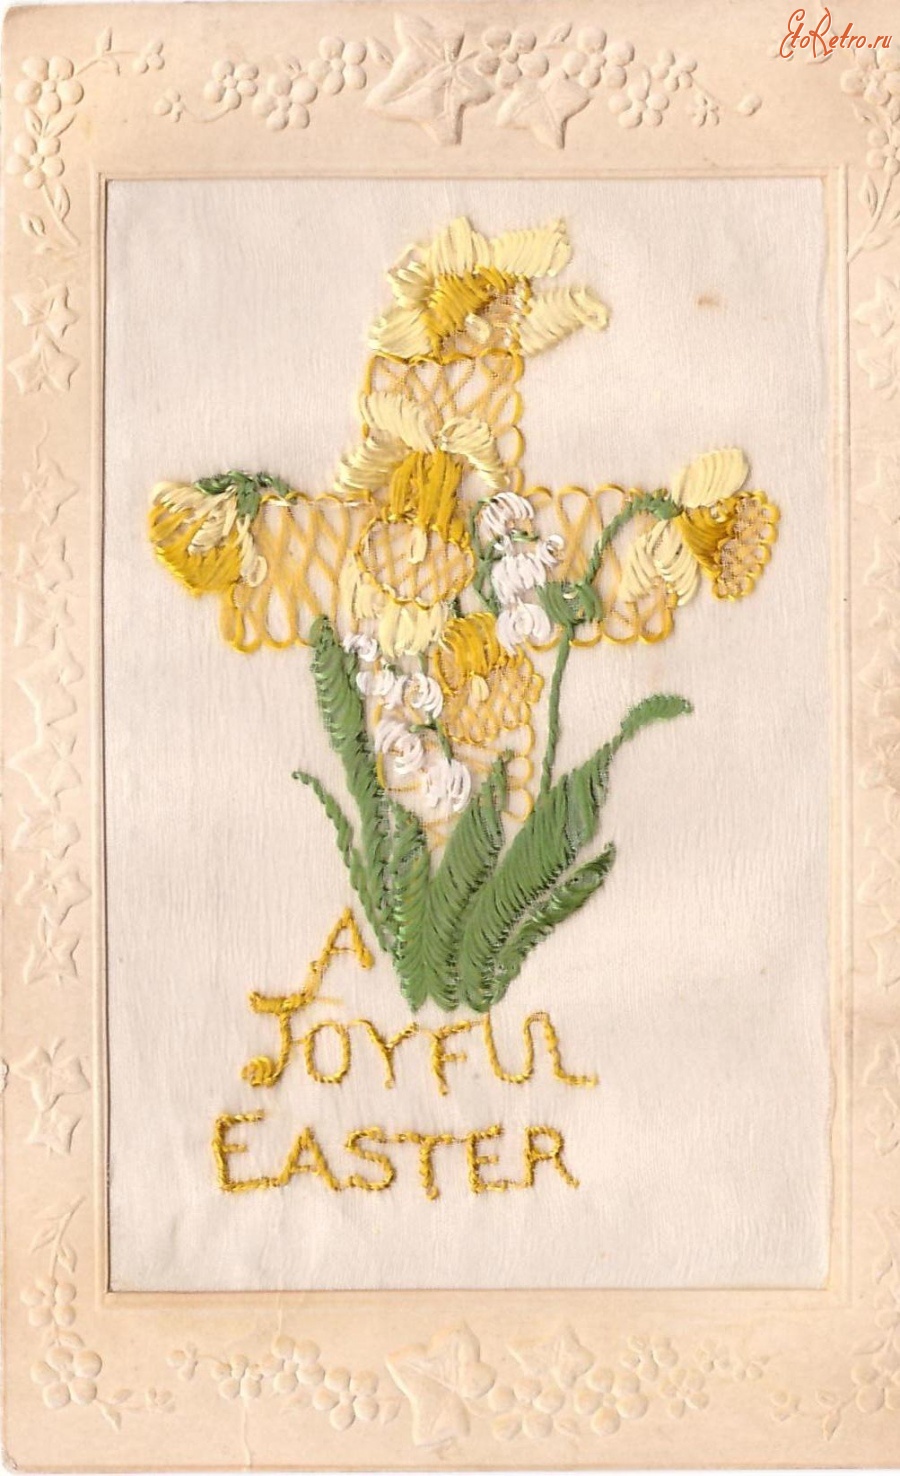 Ретро открытки - Счастливой Пасхи. Нарциссы и крест